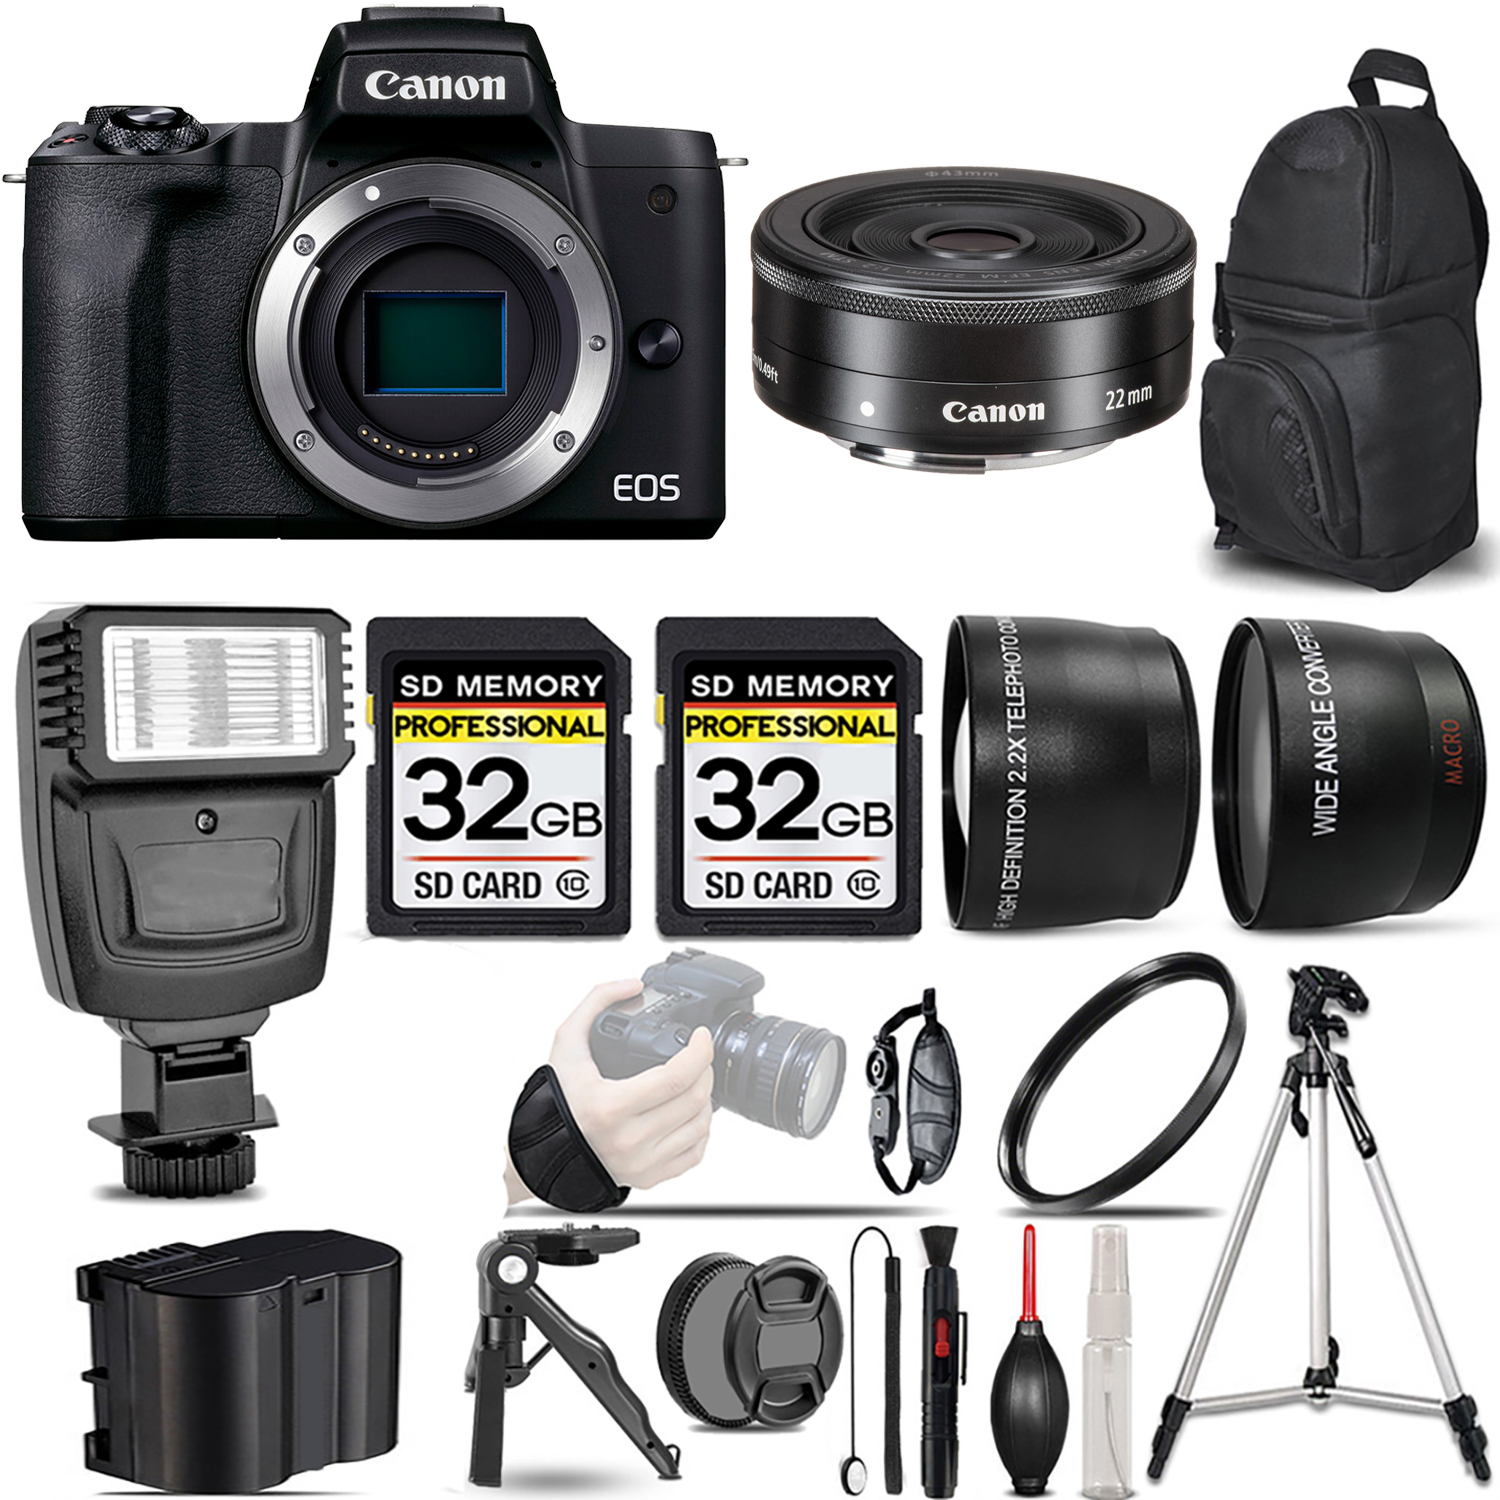 EOS EOS M50 Mark II Camera (Black) + 22mm f/2 STM Lens + Flash + 64GB - Kit *FREE SHIPPING*